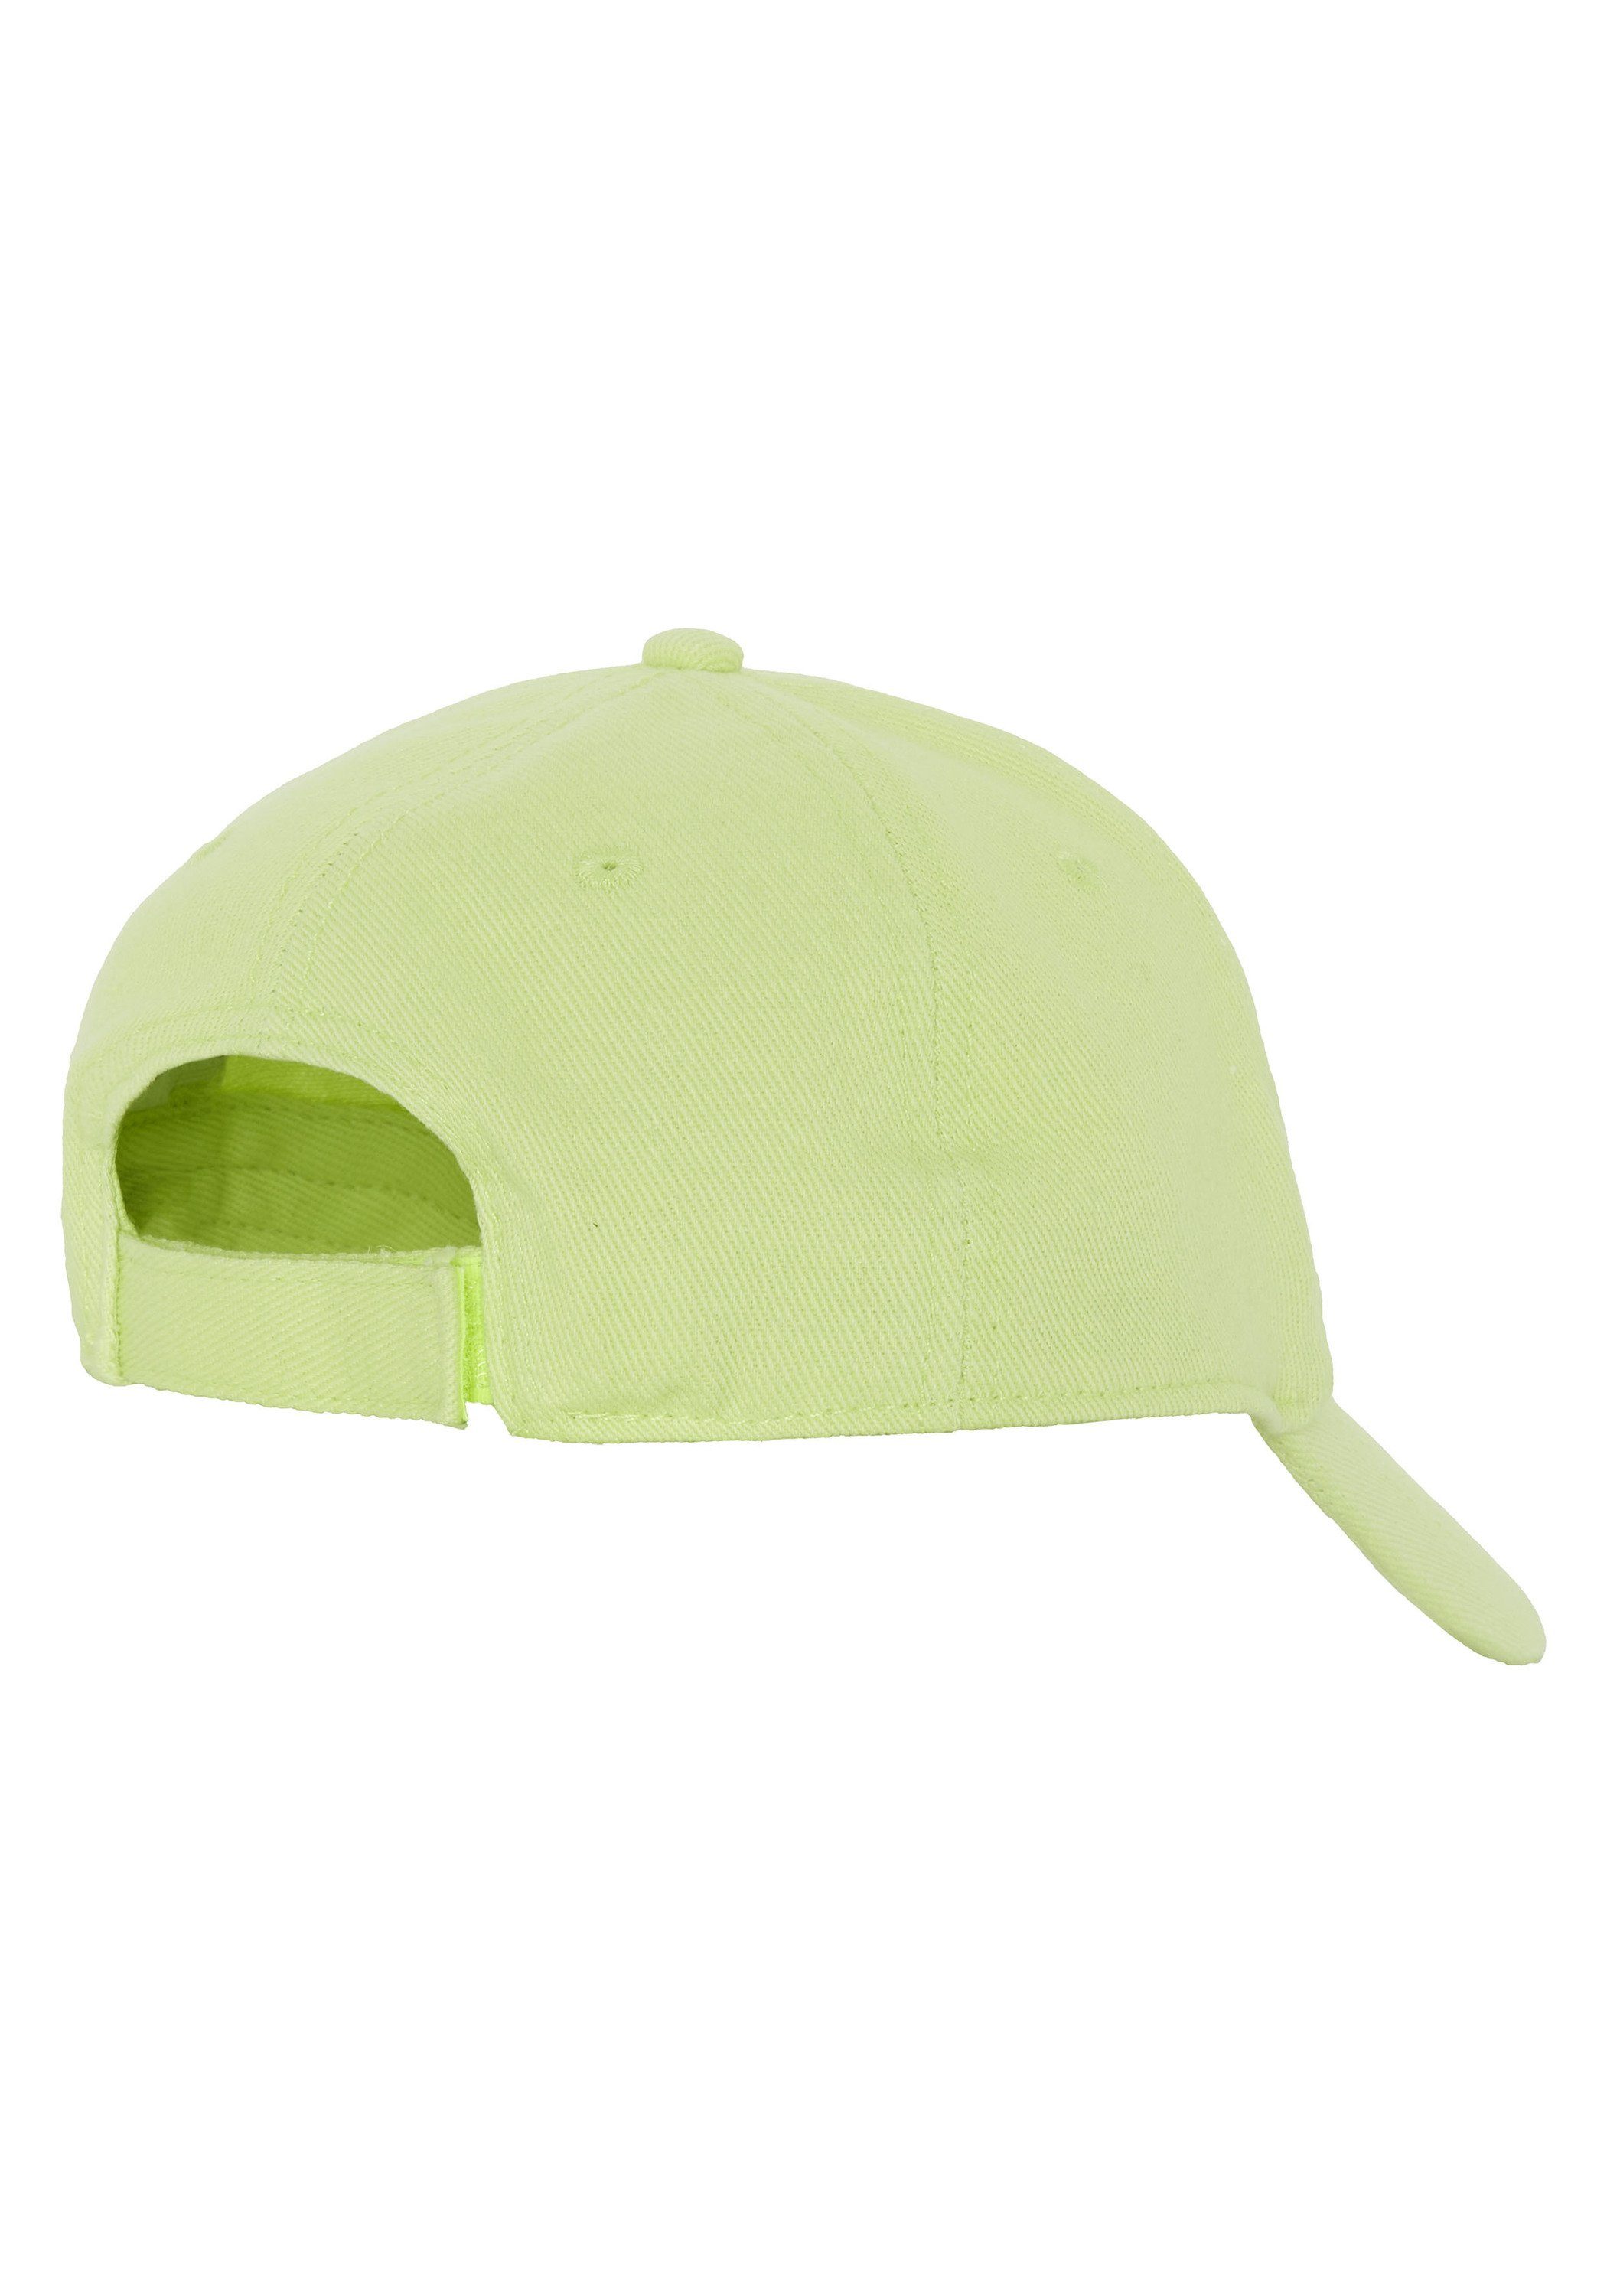 Chiemsee Snapback Cap Unisex Sharp Cap im aus Green 13-0535 1 Label-Design Baumwolle